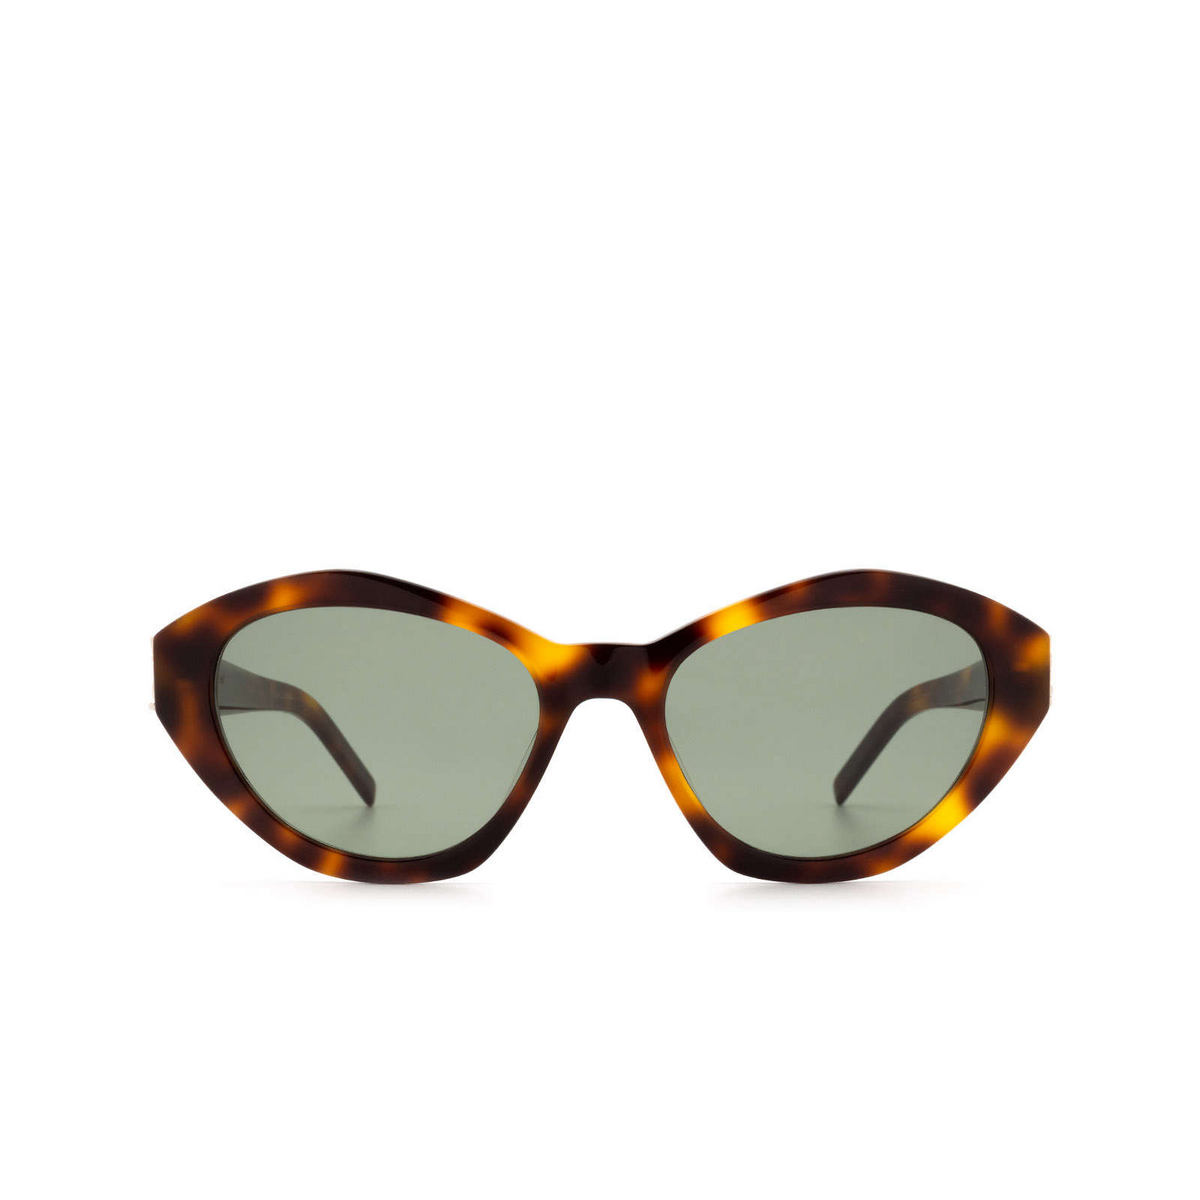 Saint Laurent® Sunglasses: SL M60 color Havana 003 - front view.